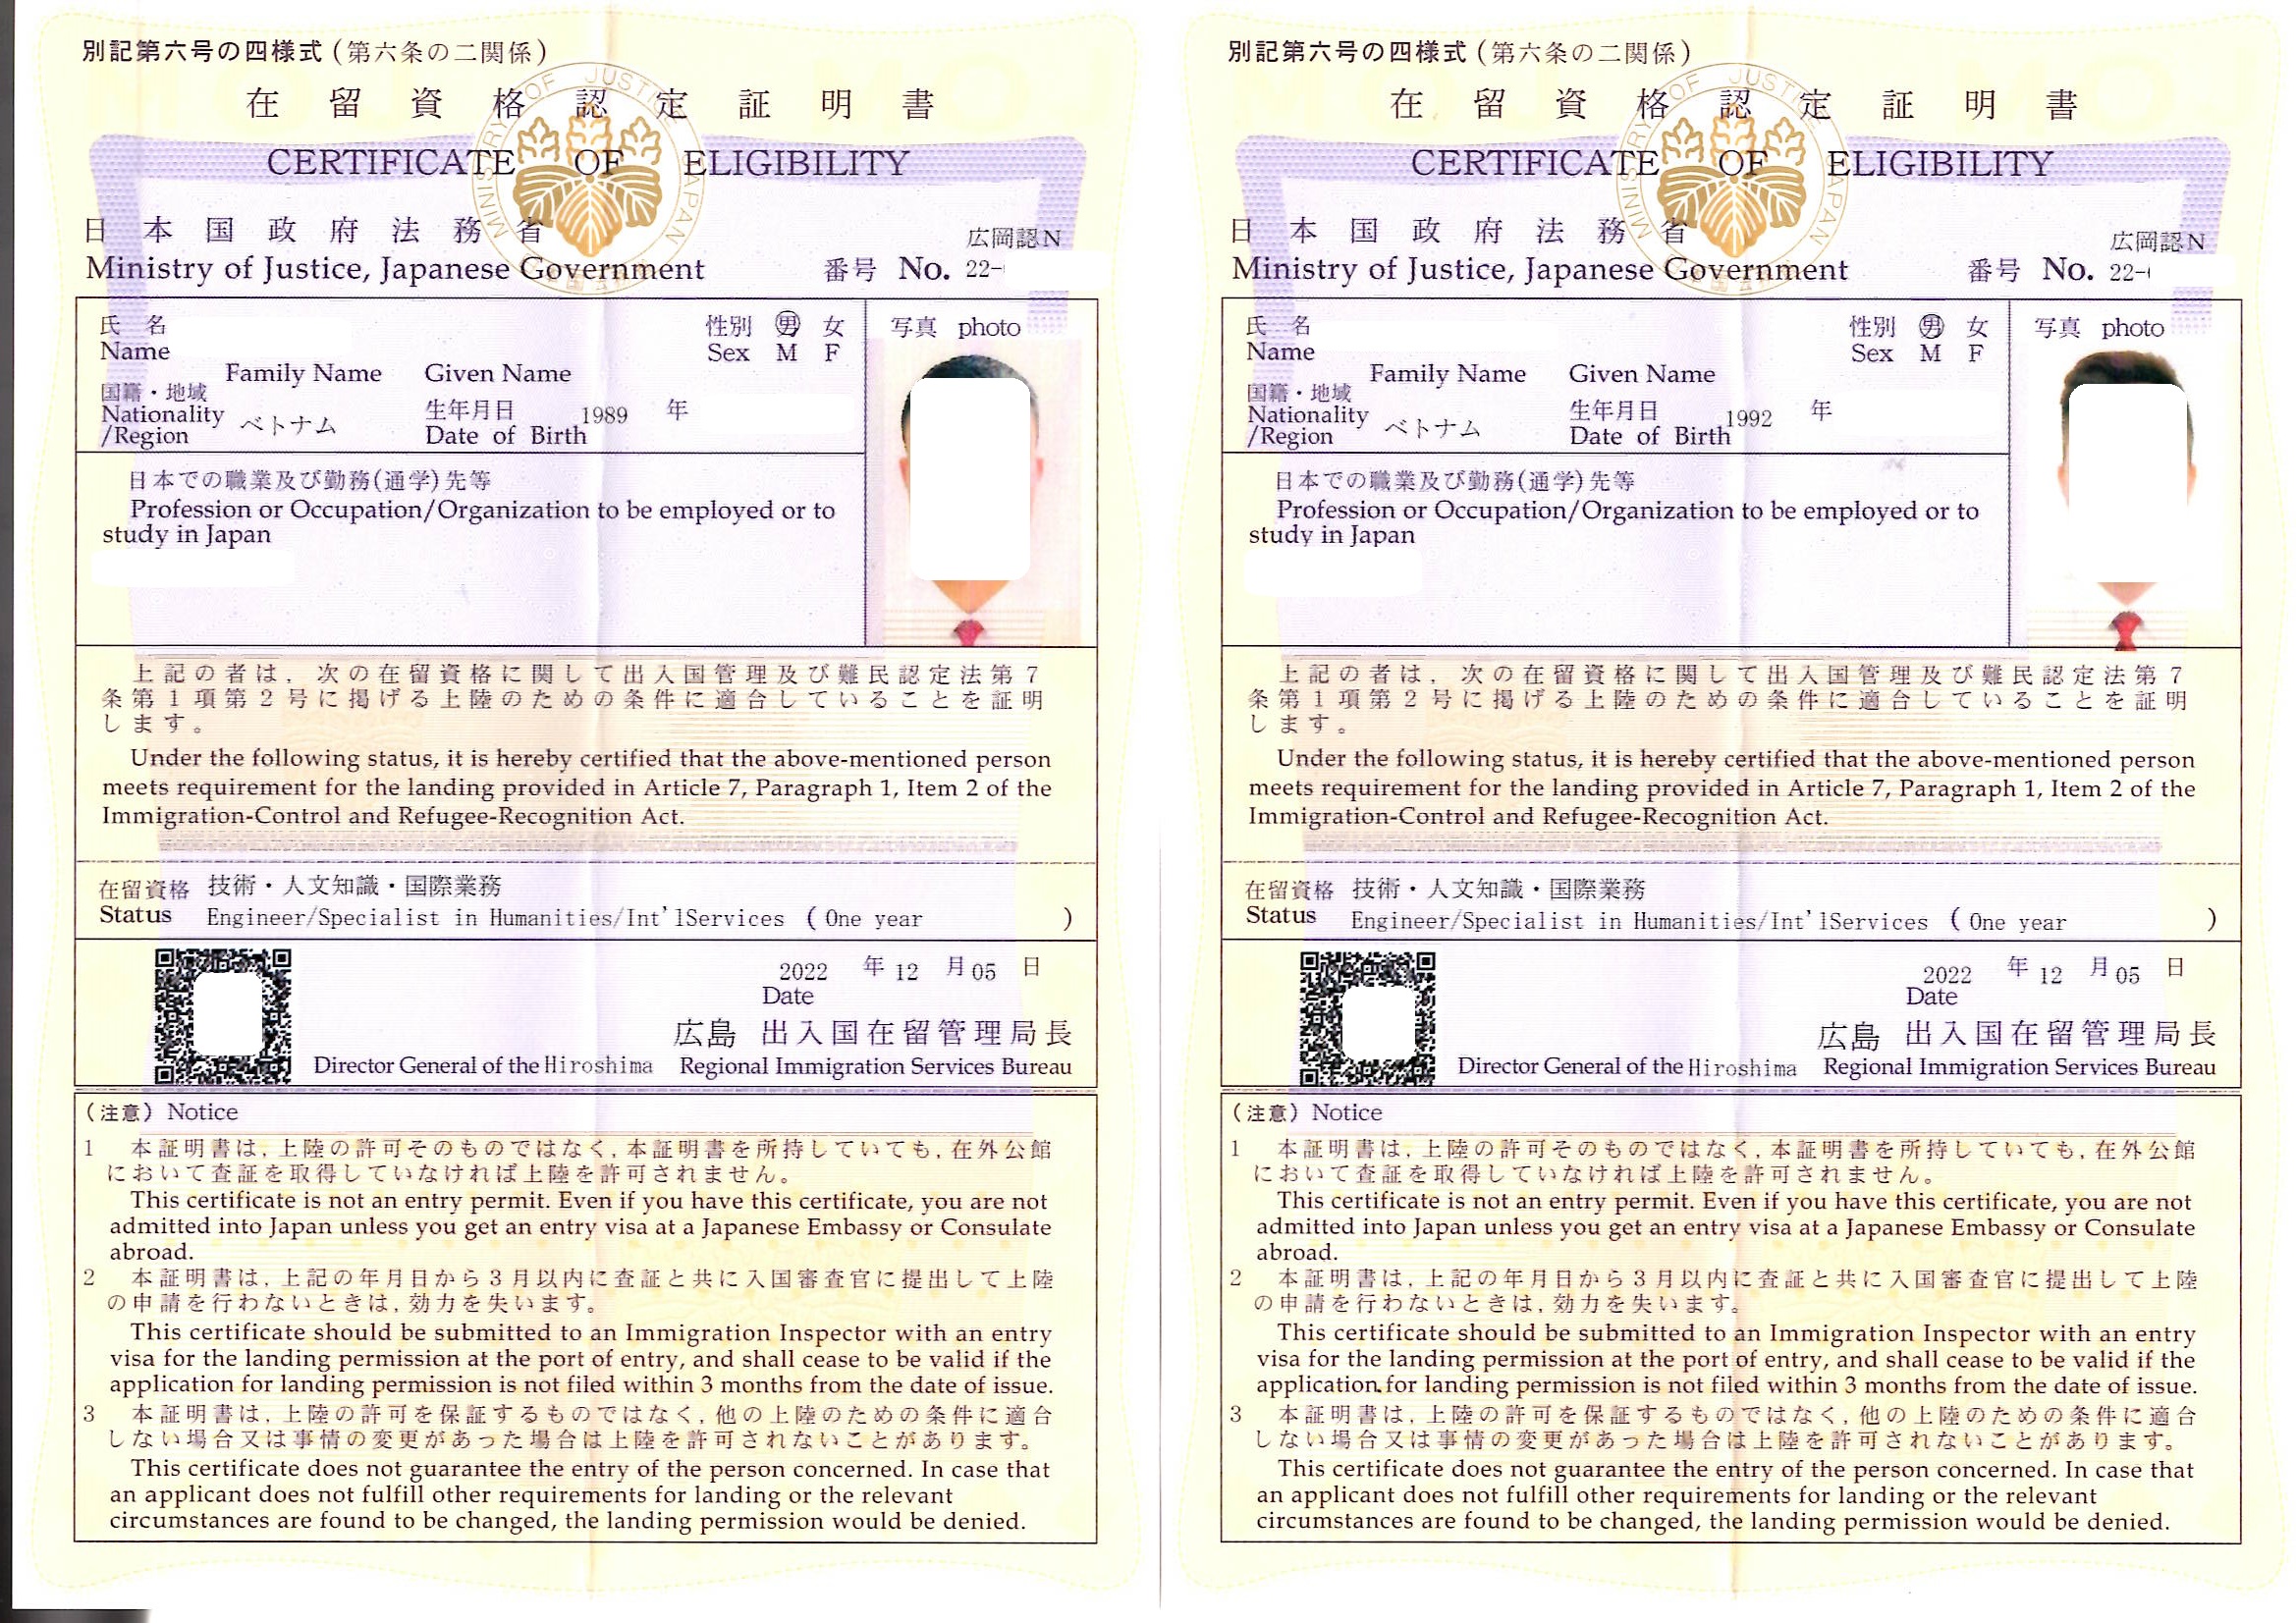 ベトナム人2名「技術・人文知識・国際業務」での在留資格認定証明書1年を取得